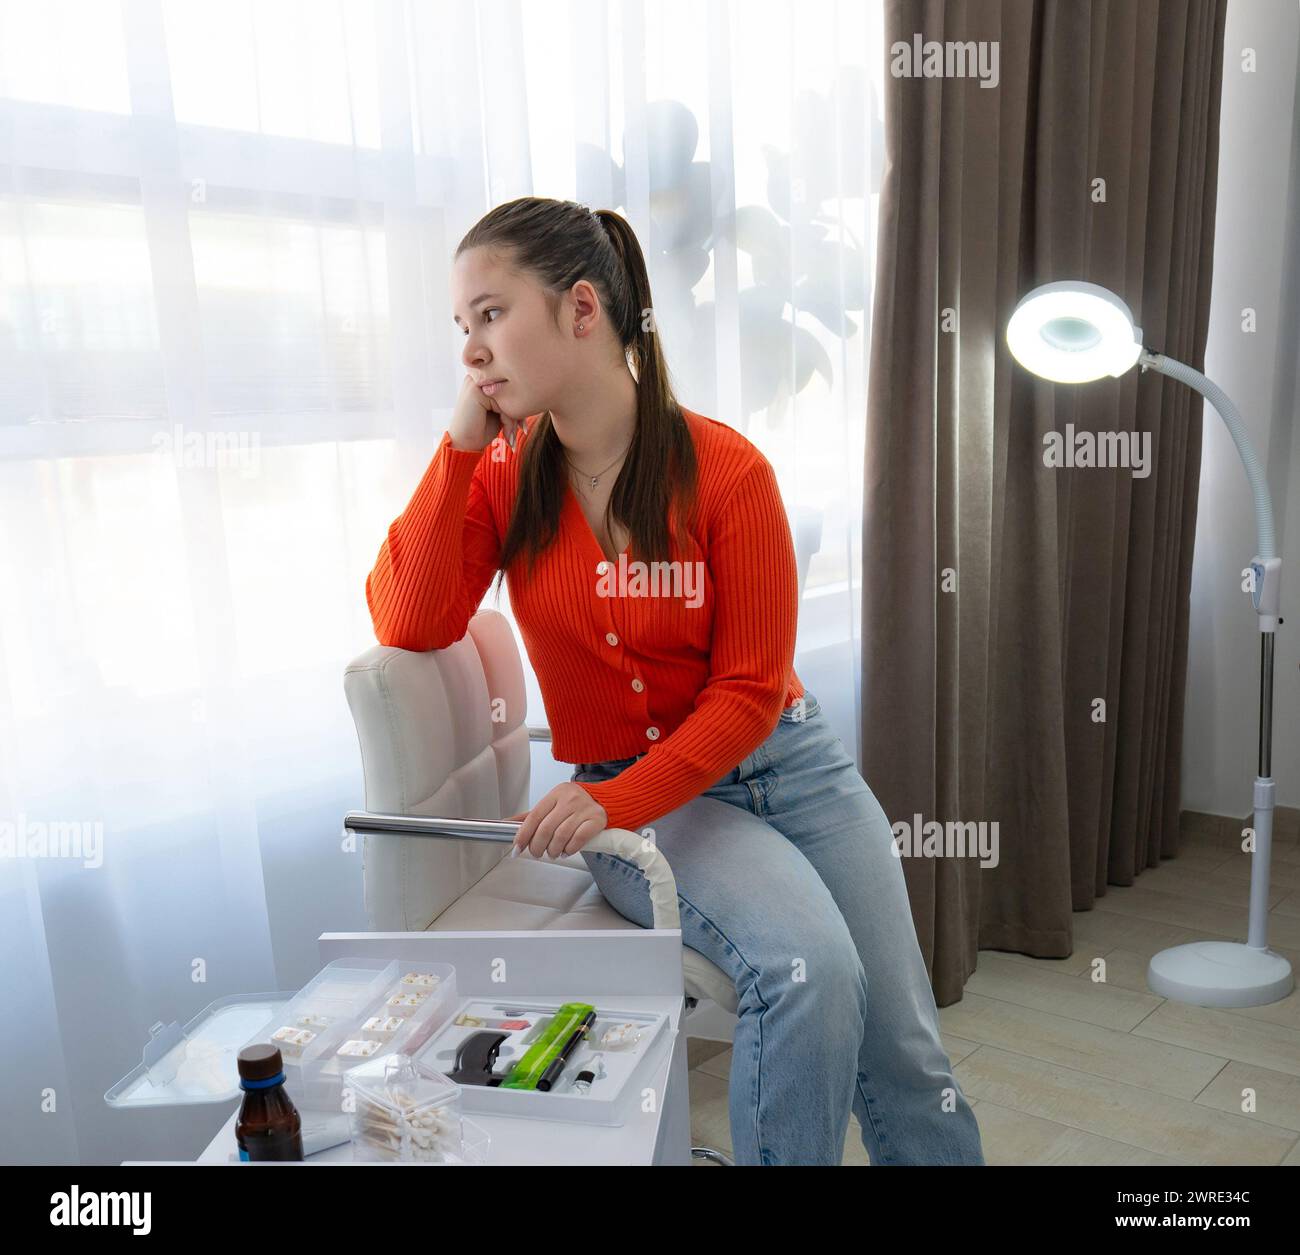 Una ragazza caucasica guarda con rabbia alla finestra, prima della procedura di piercing al salone di bellezza. Foto di alta qualità Foto Stock